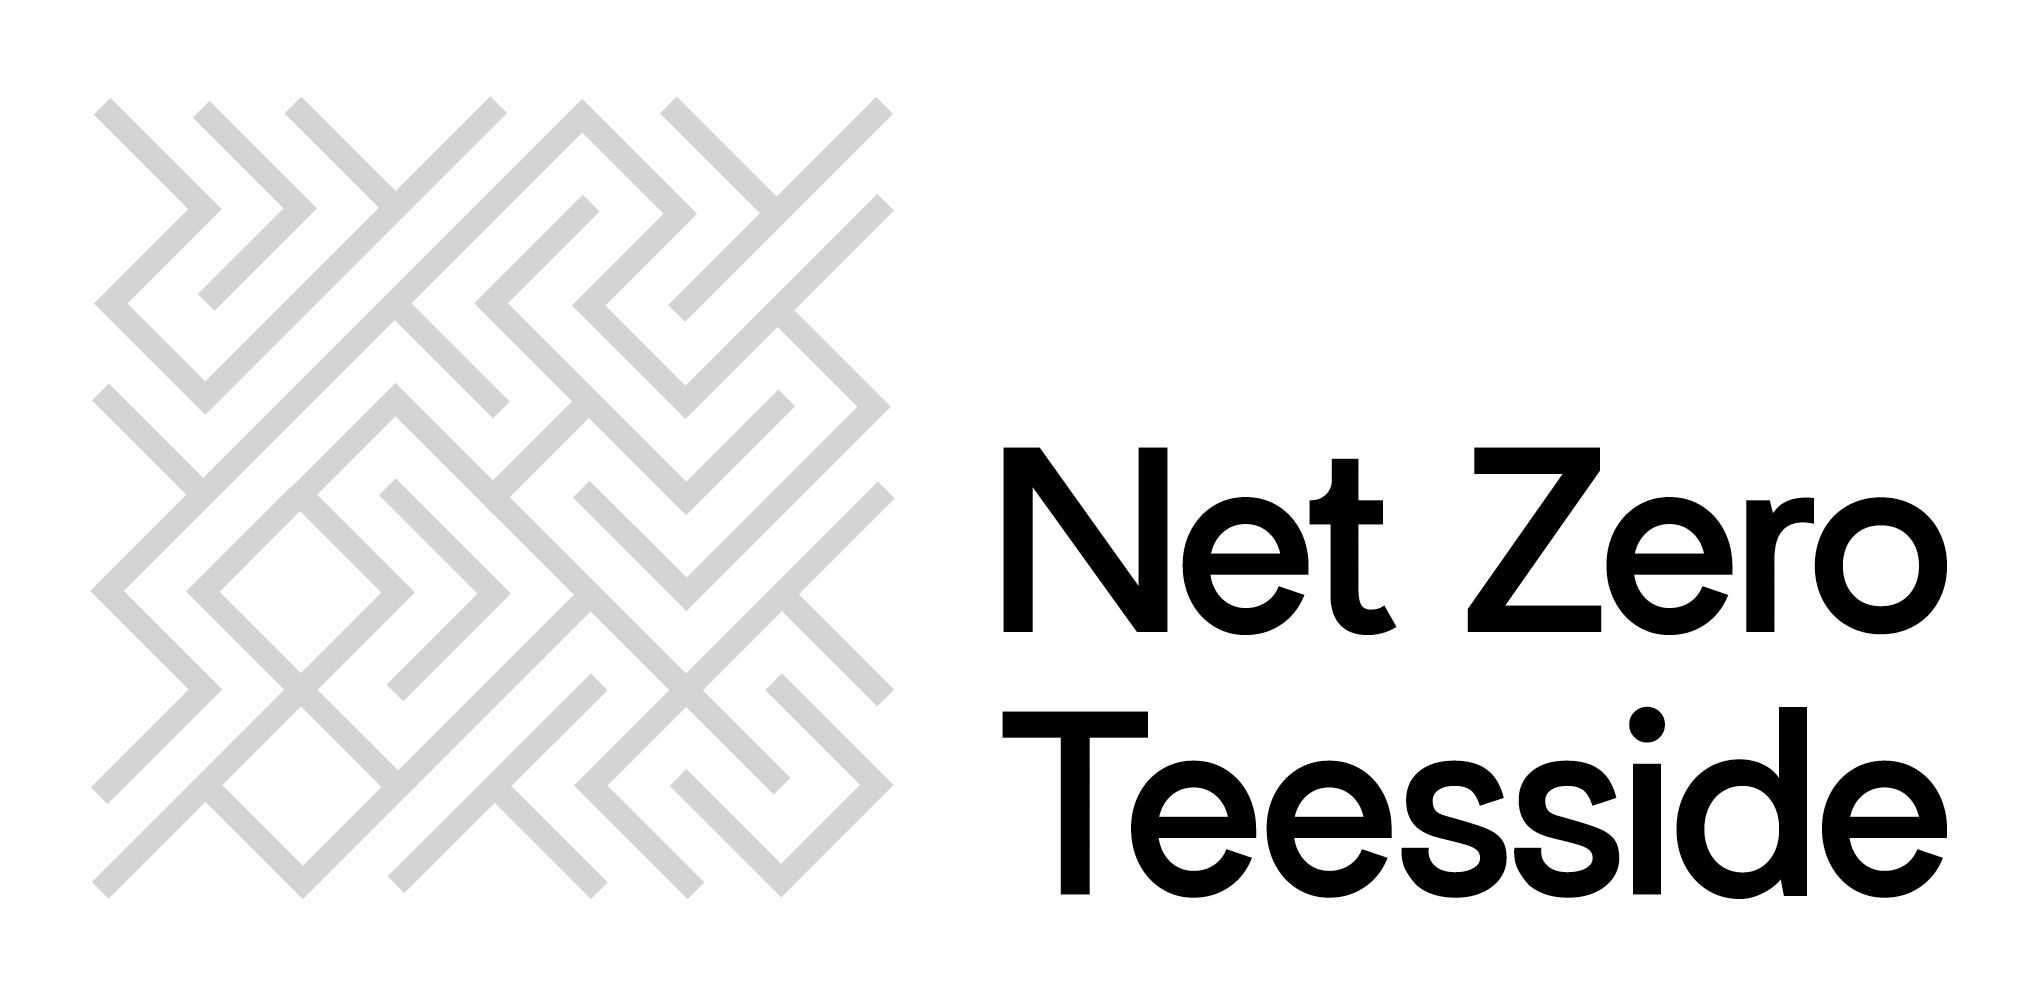 Net Zero Teesside Logo